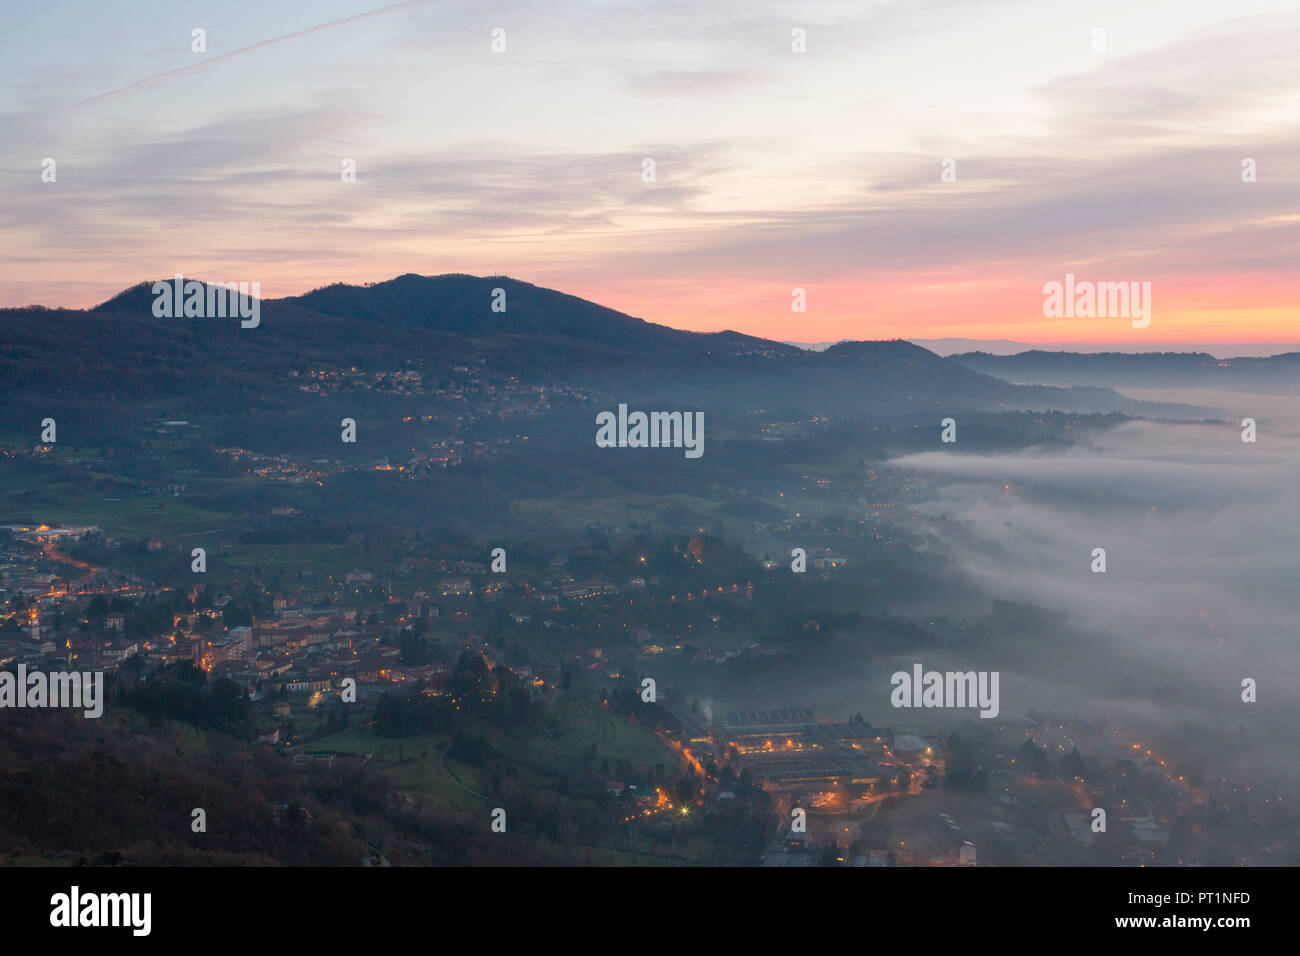 Nebbia banca visto dalla cima del Monte Barro al crepuscolo, Monte Barro Parco Regionale, provincia di Lecco, Lombardia, Italia Foto Stock